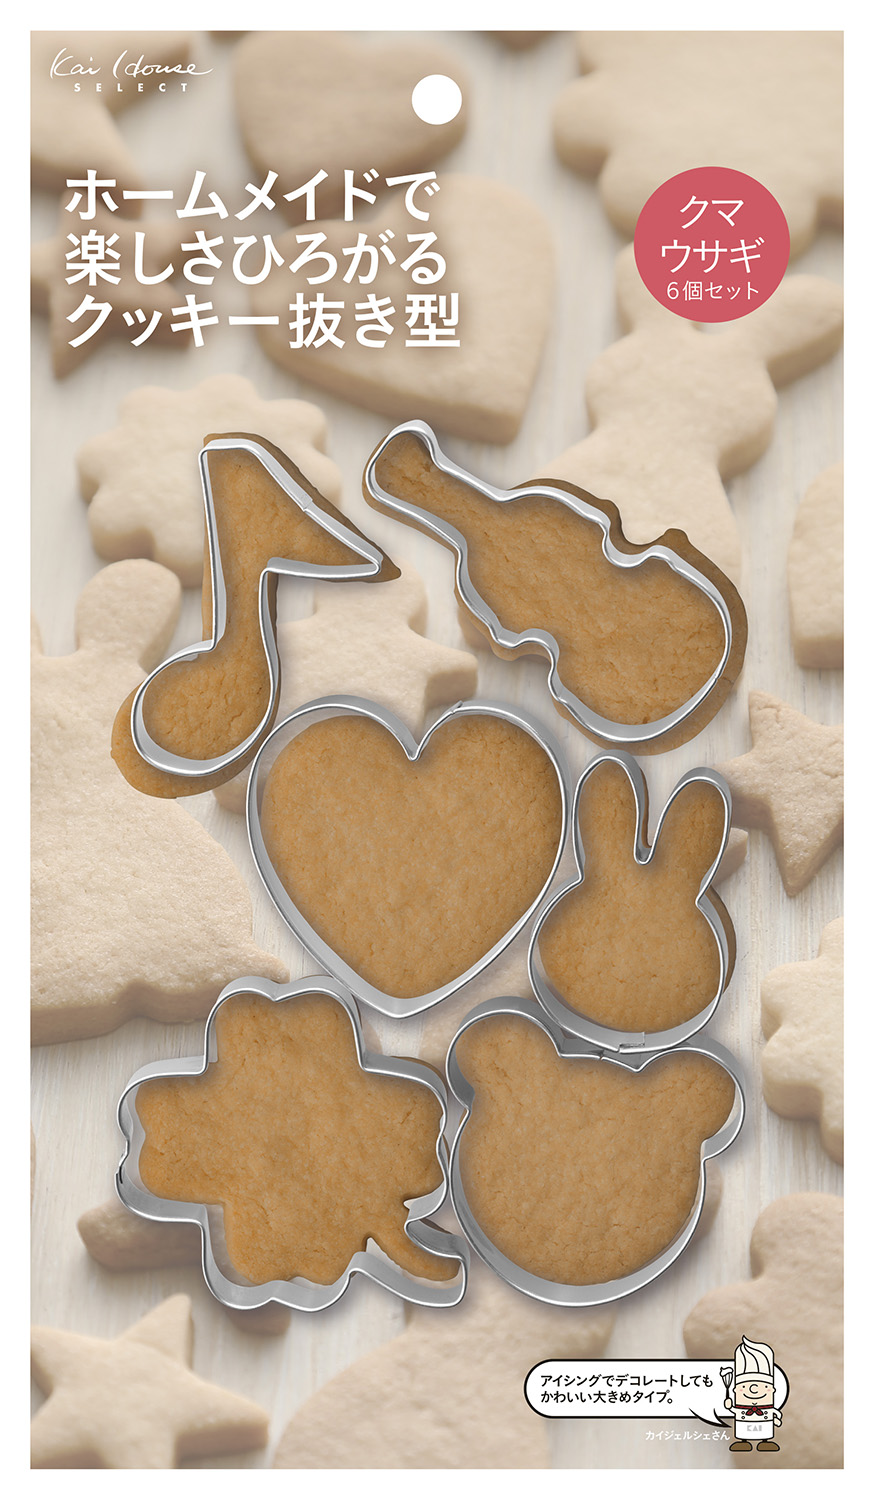 貝印 Kai House SELECT ホームメイドで楽しさひろがるクッキー抜き型 クマ ウサギ6点セット DL-6428